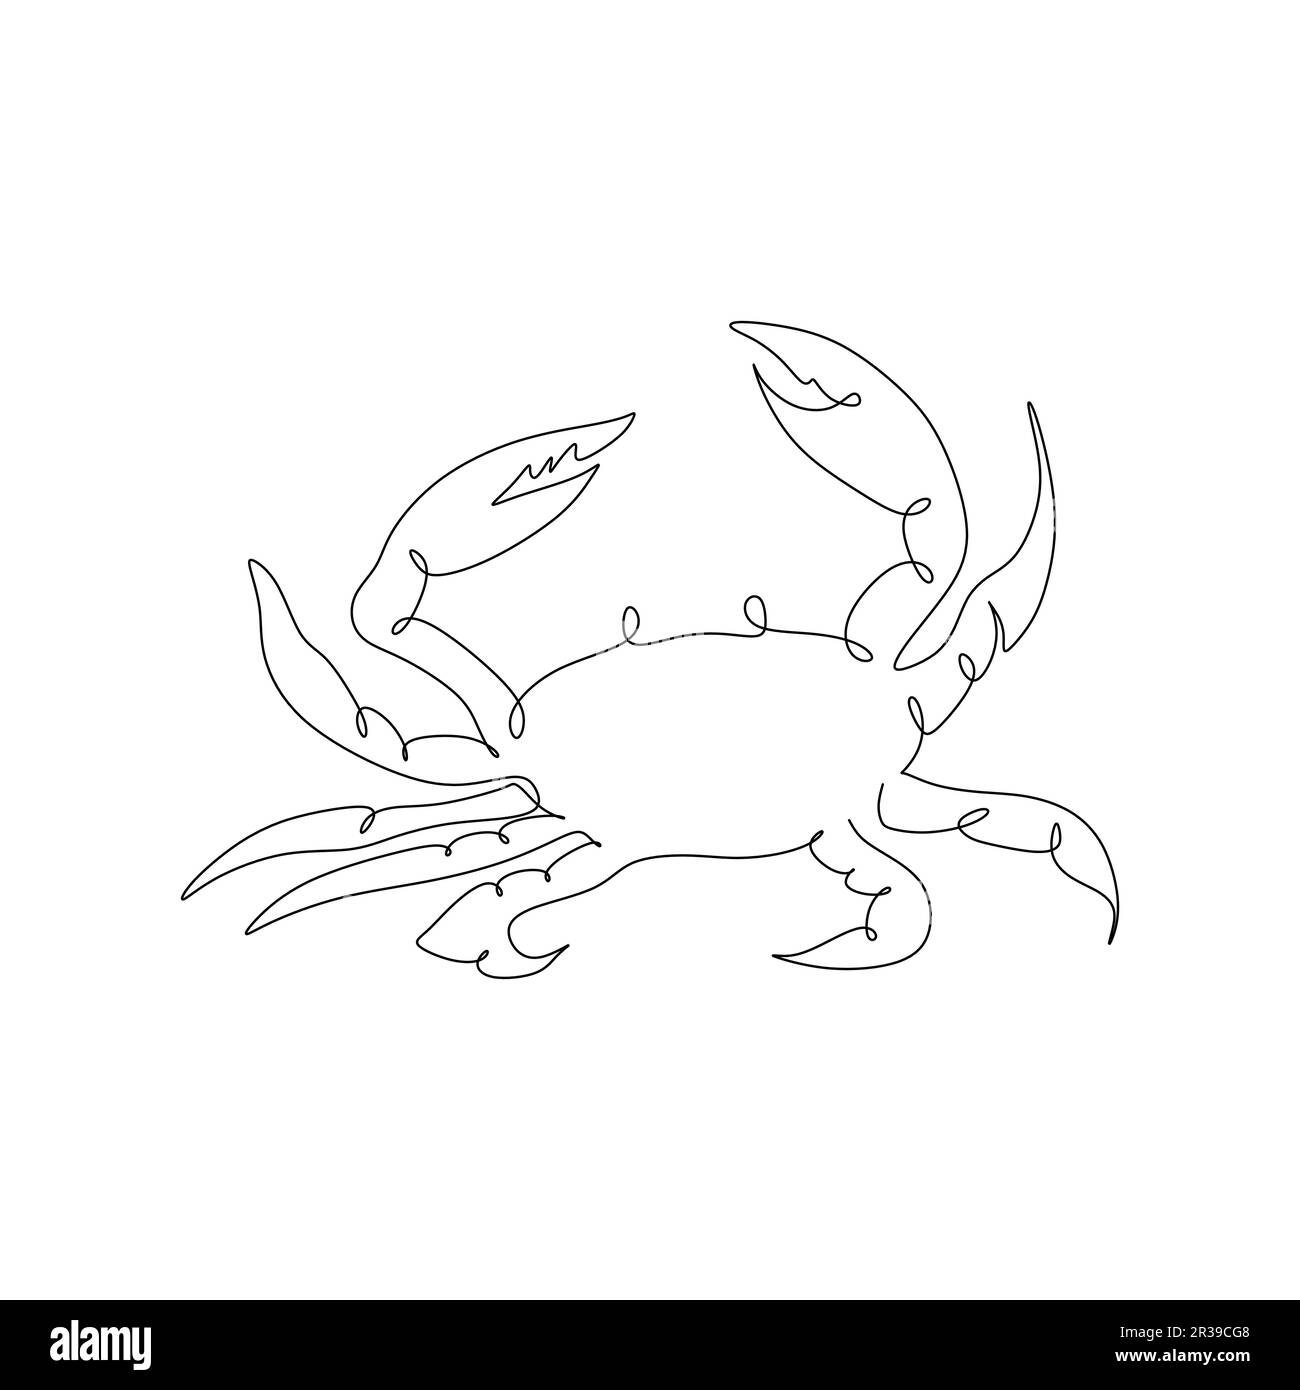 Un simple dessin de ligne abstraite simple en continu d'un concept d'illustration de vecteur d'icône de crabe Illustration de Vecteur